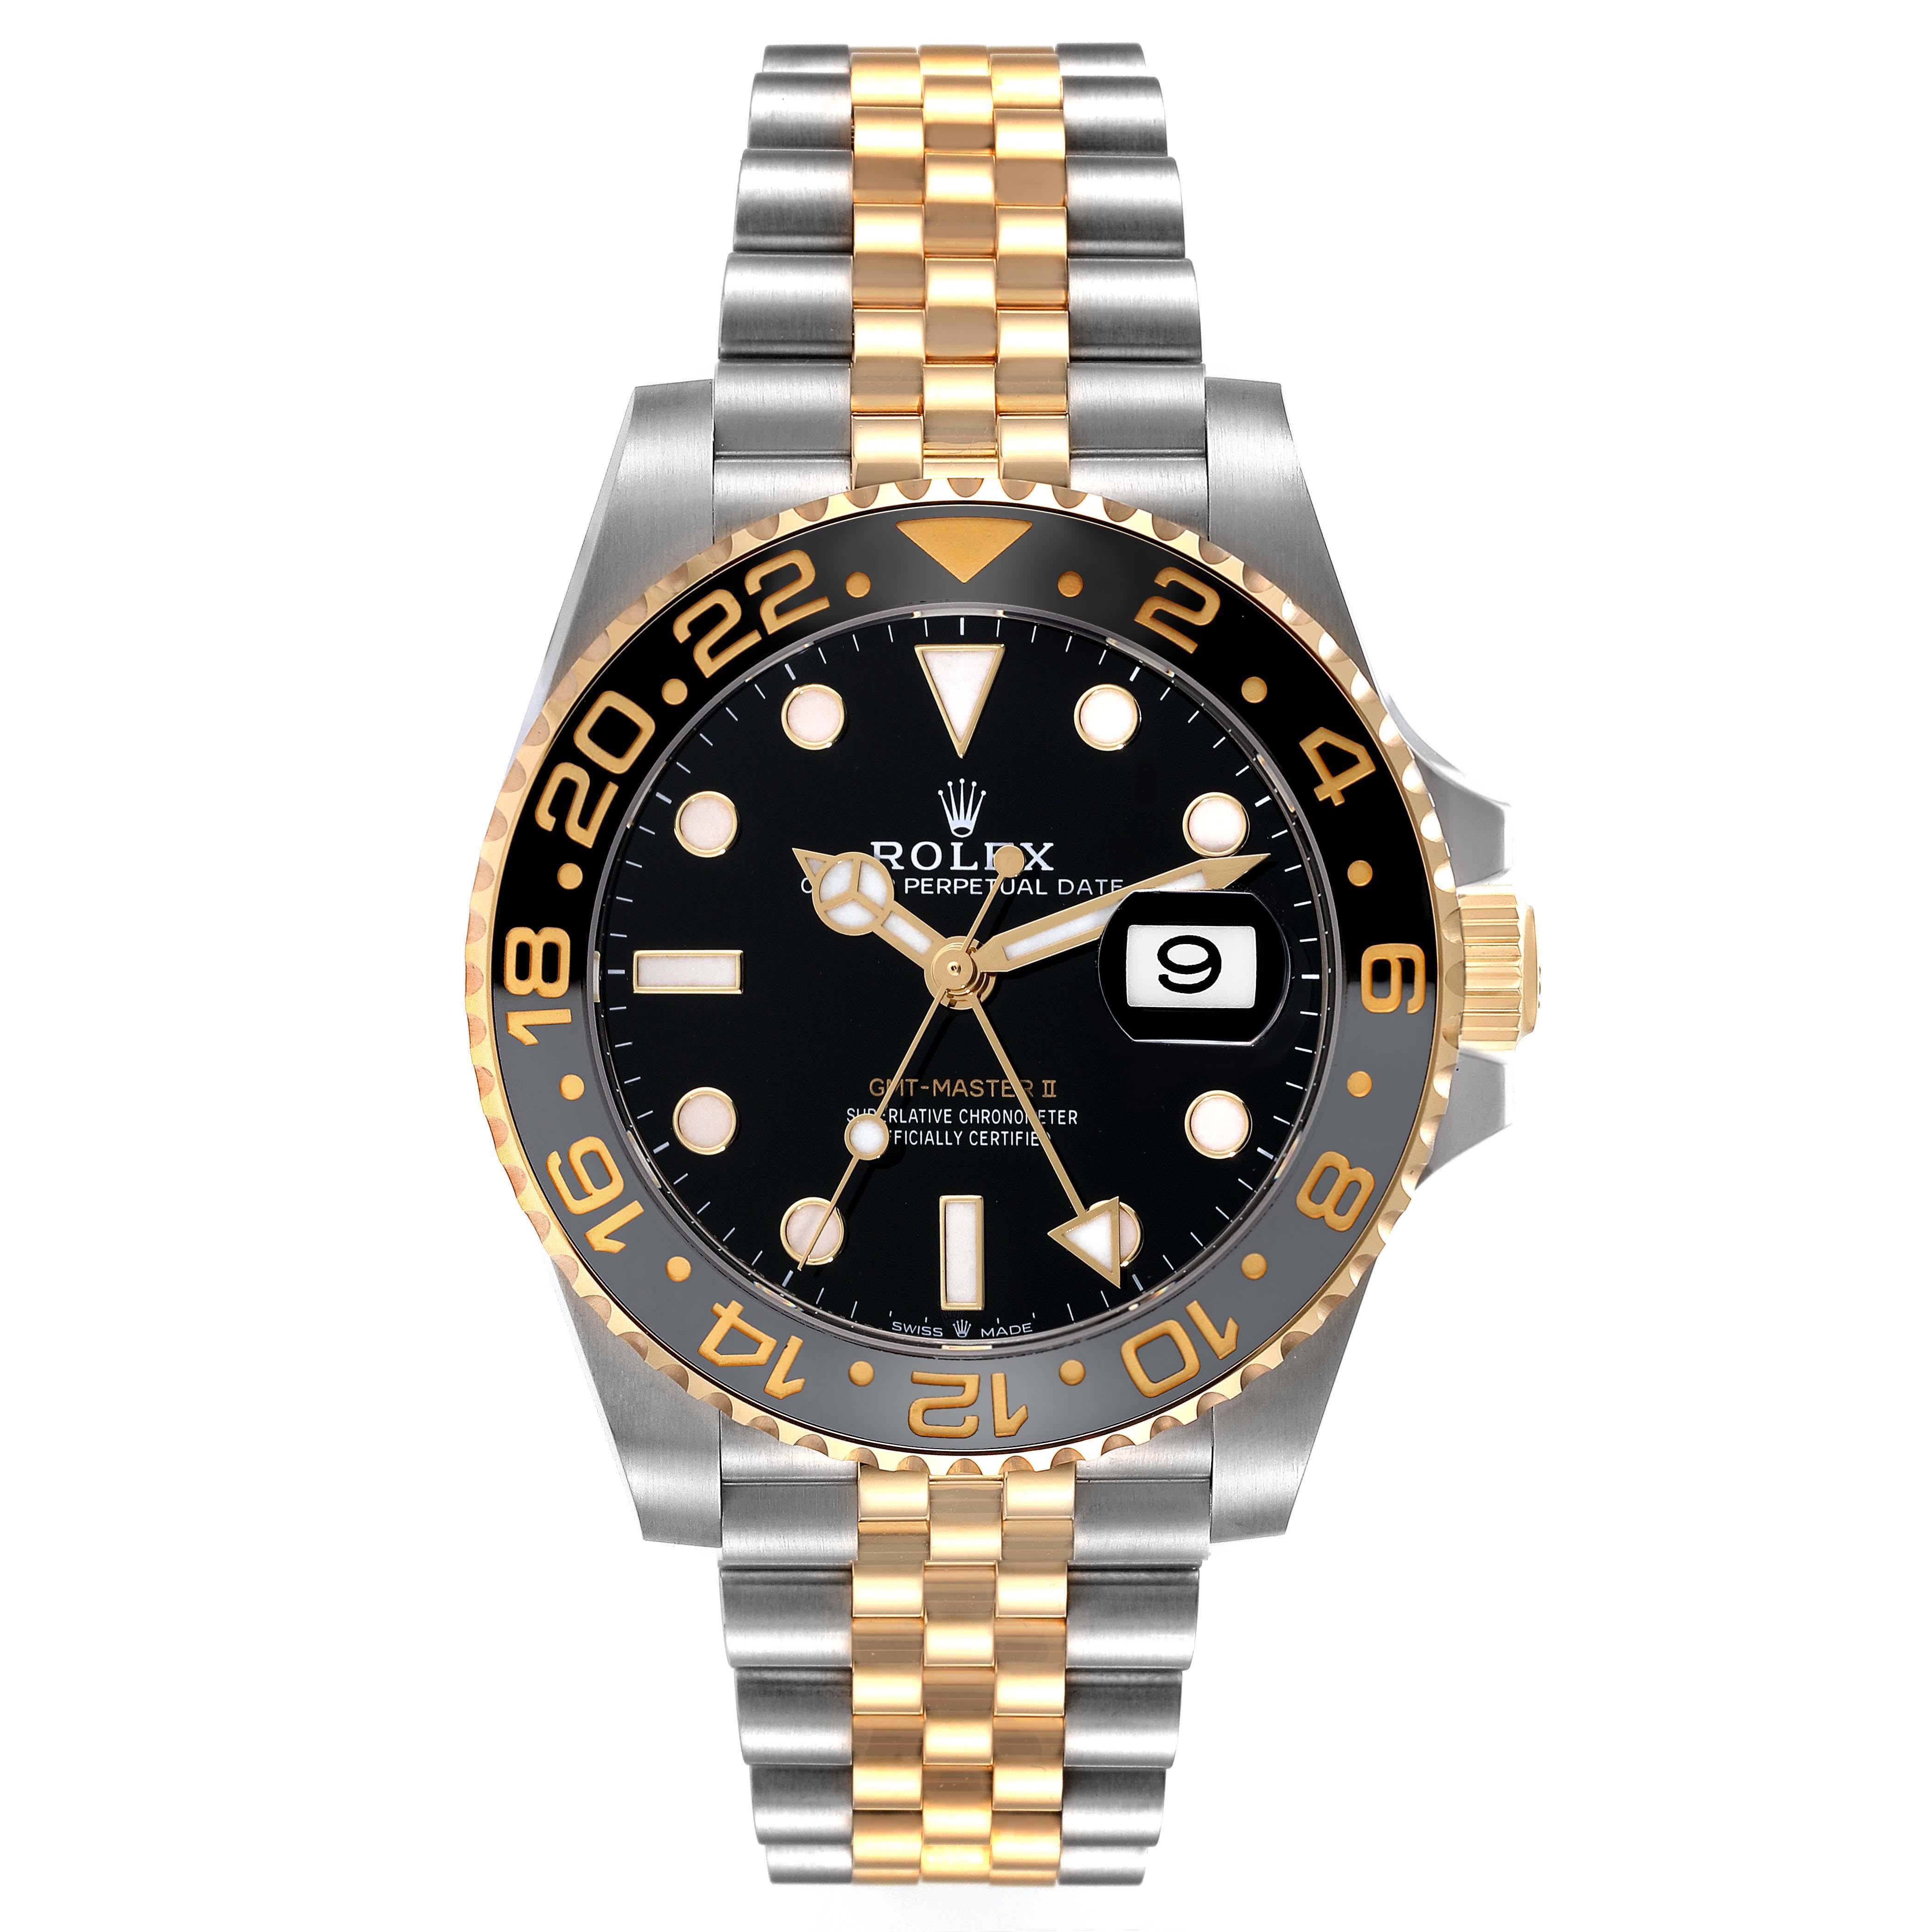 Rolex GMT Master II Yellow Gold Steel Grey Bezel Mens Watch 126713 Box Card. Mouvement à remontage automatique certifié chronomètre avec fonction GMT. Boîtier en acier inoxydable de 40 mm de diamètre. Logo Rolex sur une couronne en or jaune 18k.